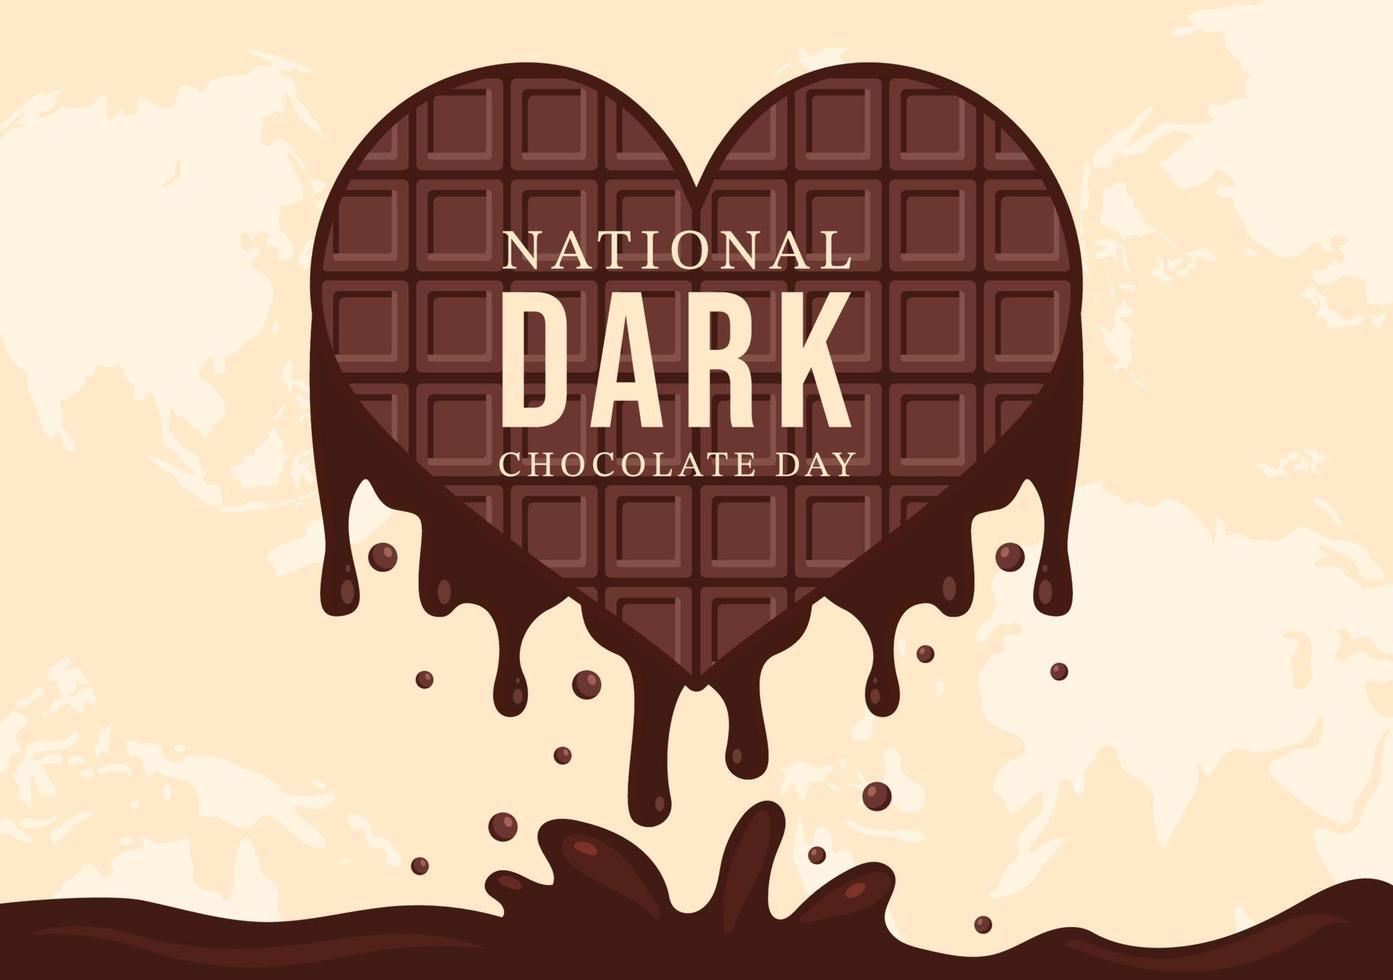 welttag der dunklen schokolade am 1. februar für die gesundheit und das glück, die choco in handgezeichneten vorlagenillustrationen im flachen karikaturstil bringt vektor